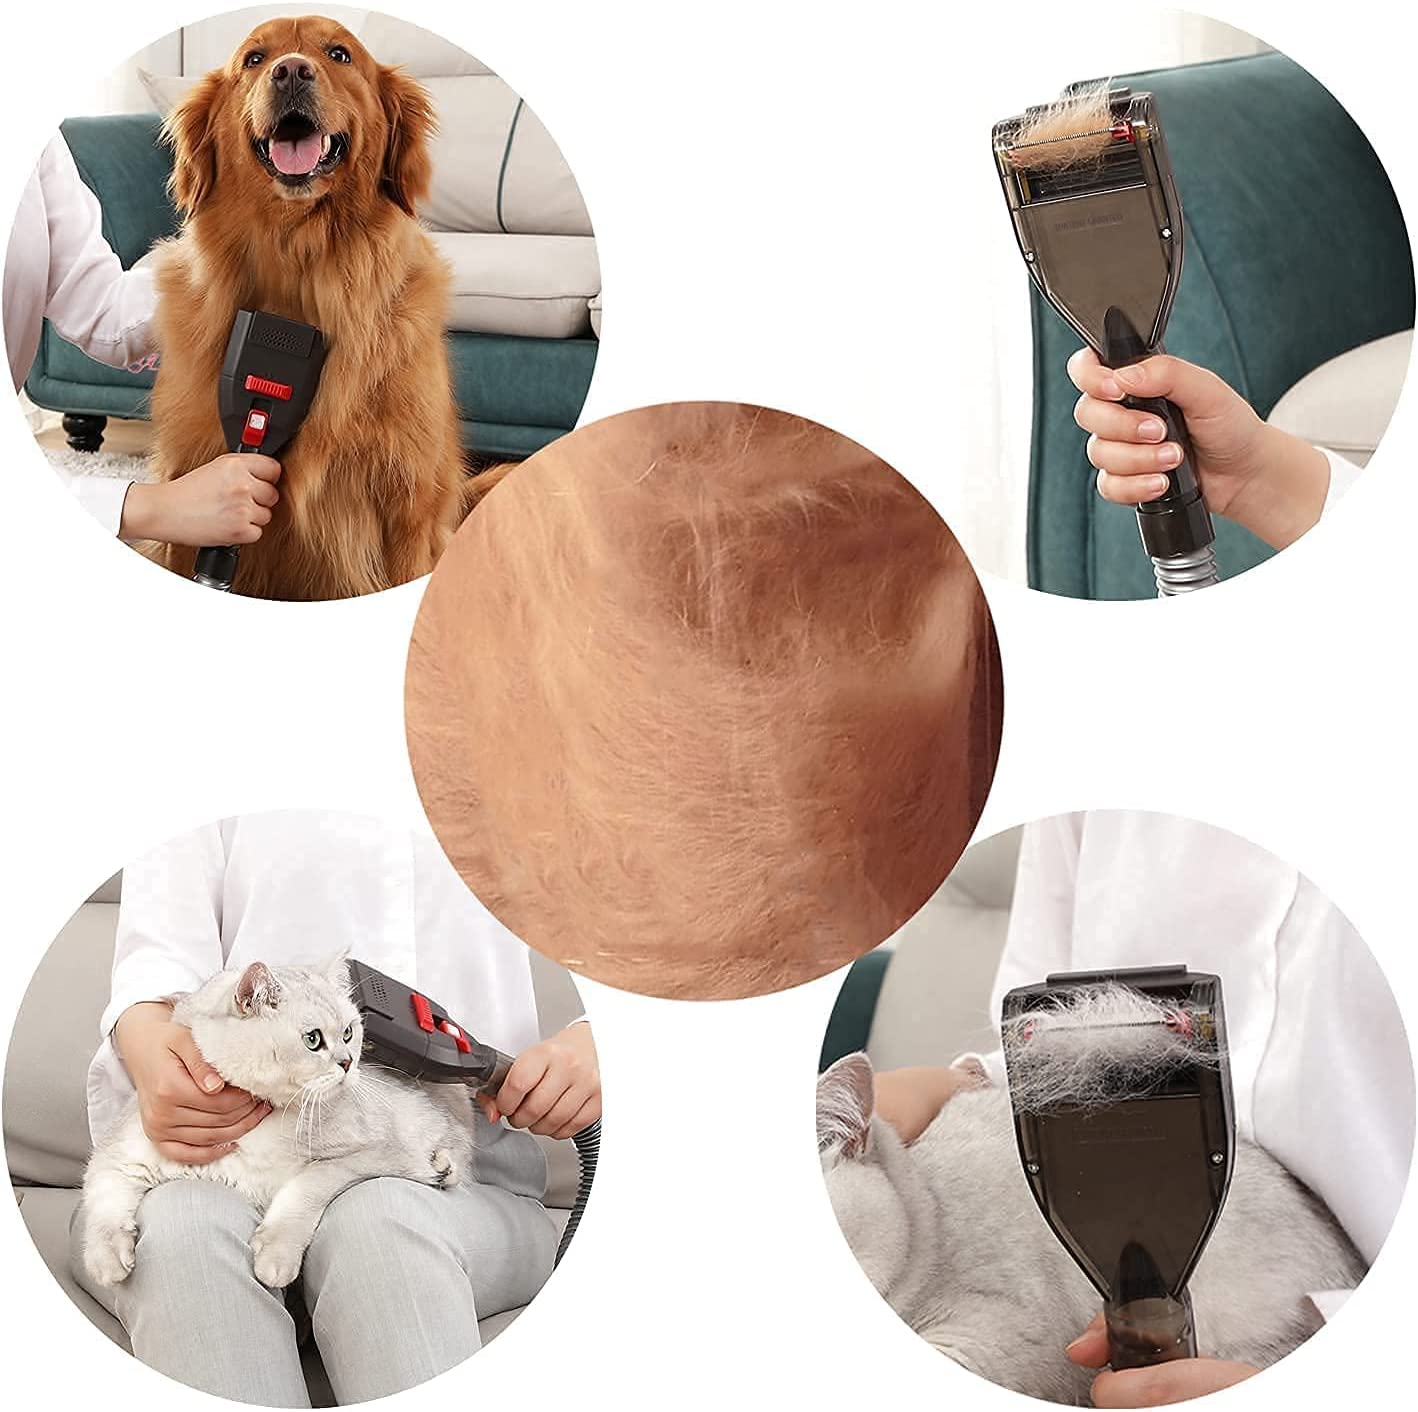   ابزار نوآورانه نظافت حیوانات خانگی: طراحی ثبت اختراع برای ریختن موهای حیوانات خانگی در هر فصل، به خصوص با عملکرد عالی روی سگ ها و گربه ها، صرفه جویی در وقت و انرژی